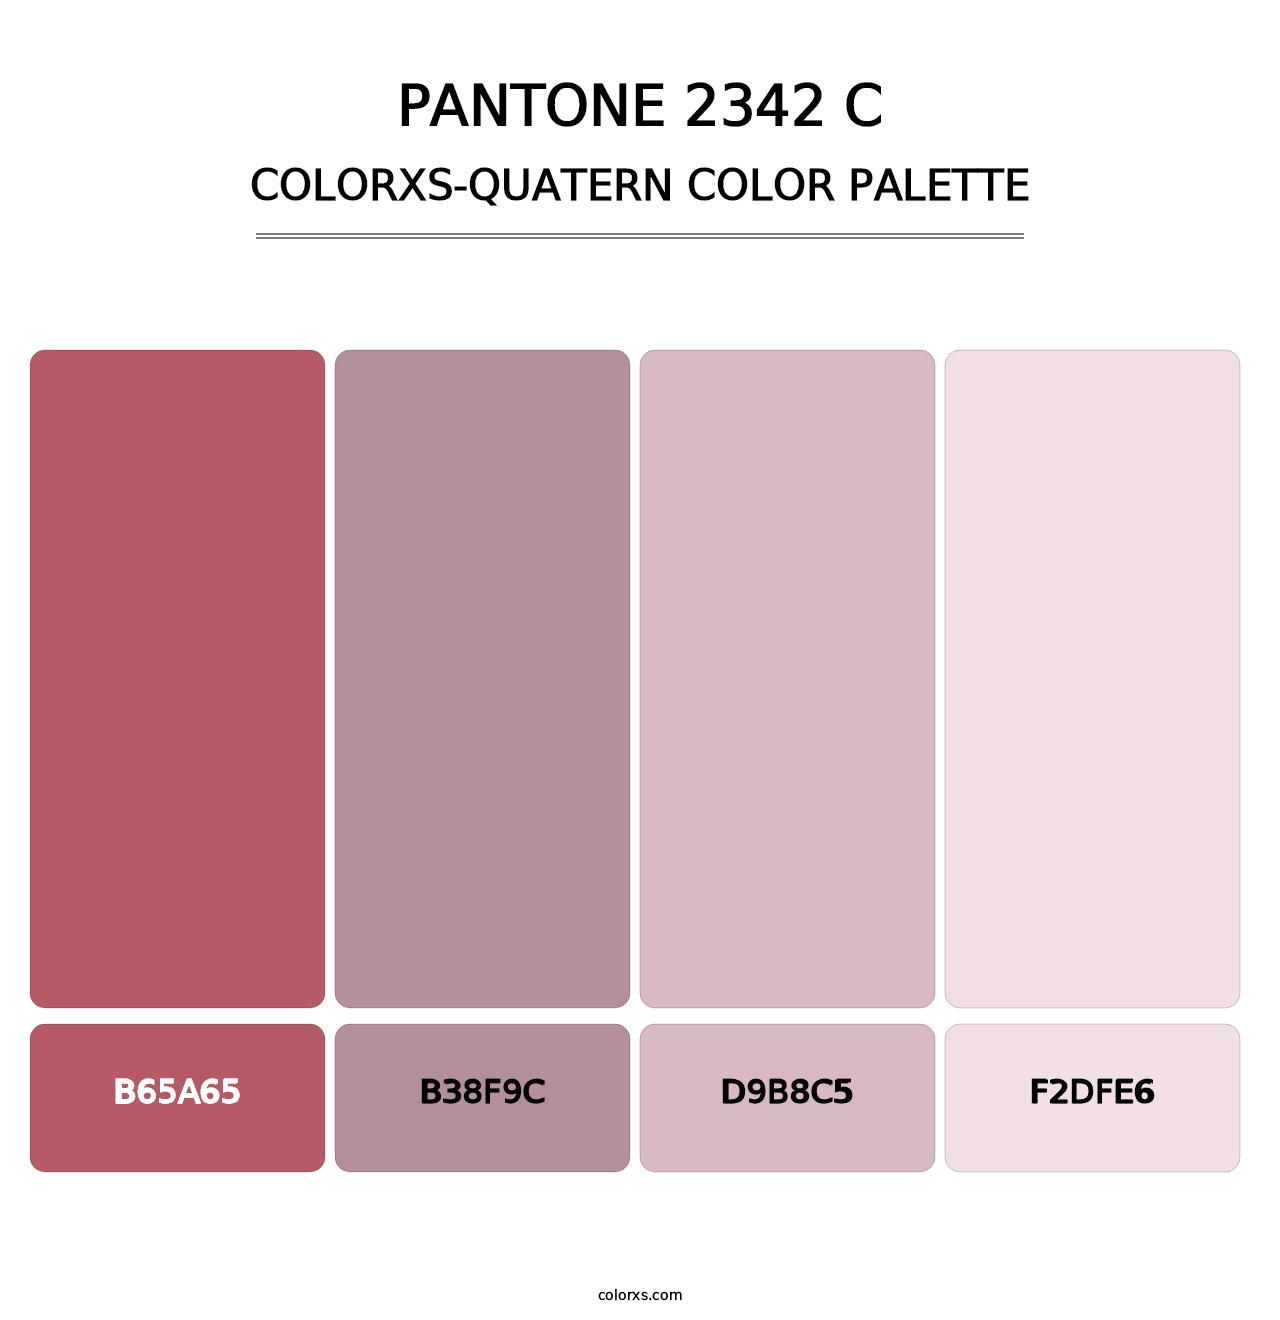 PANTONE 2342 C - Colorxs Quatern Palette